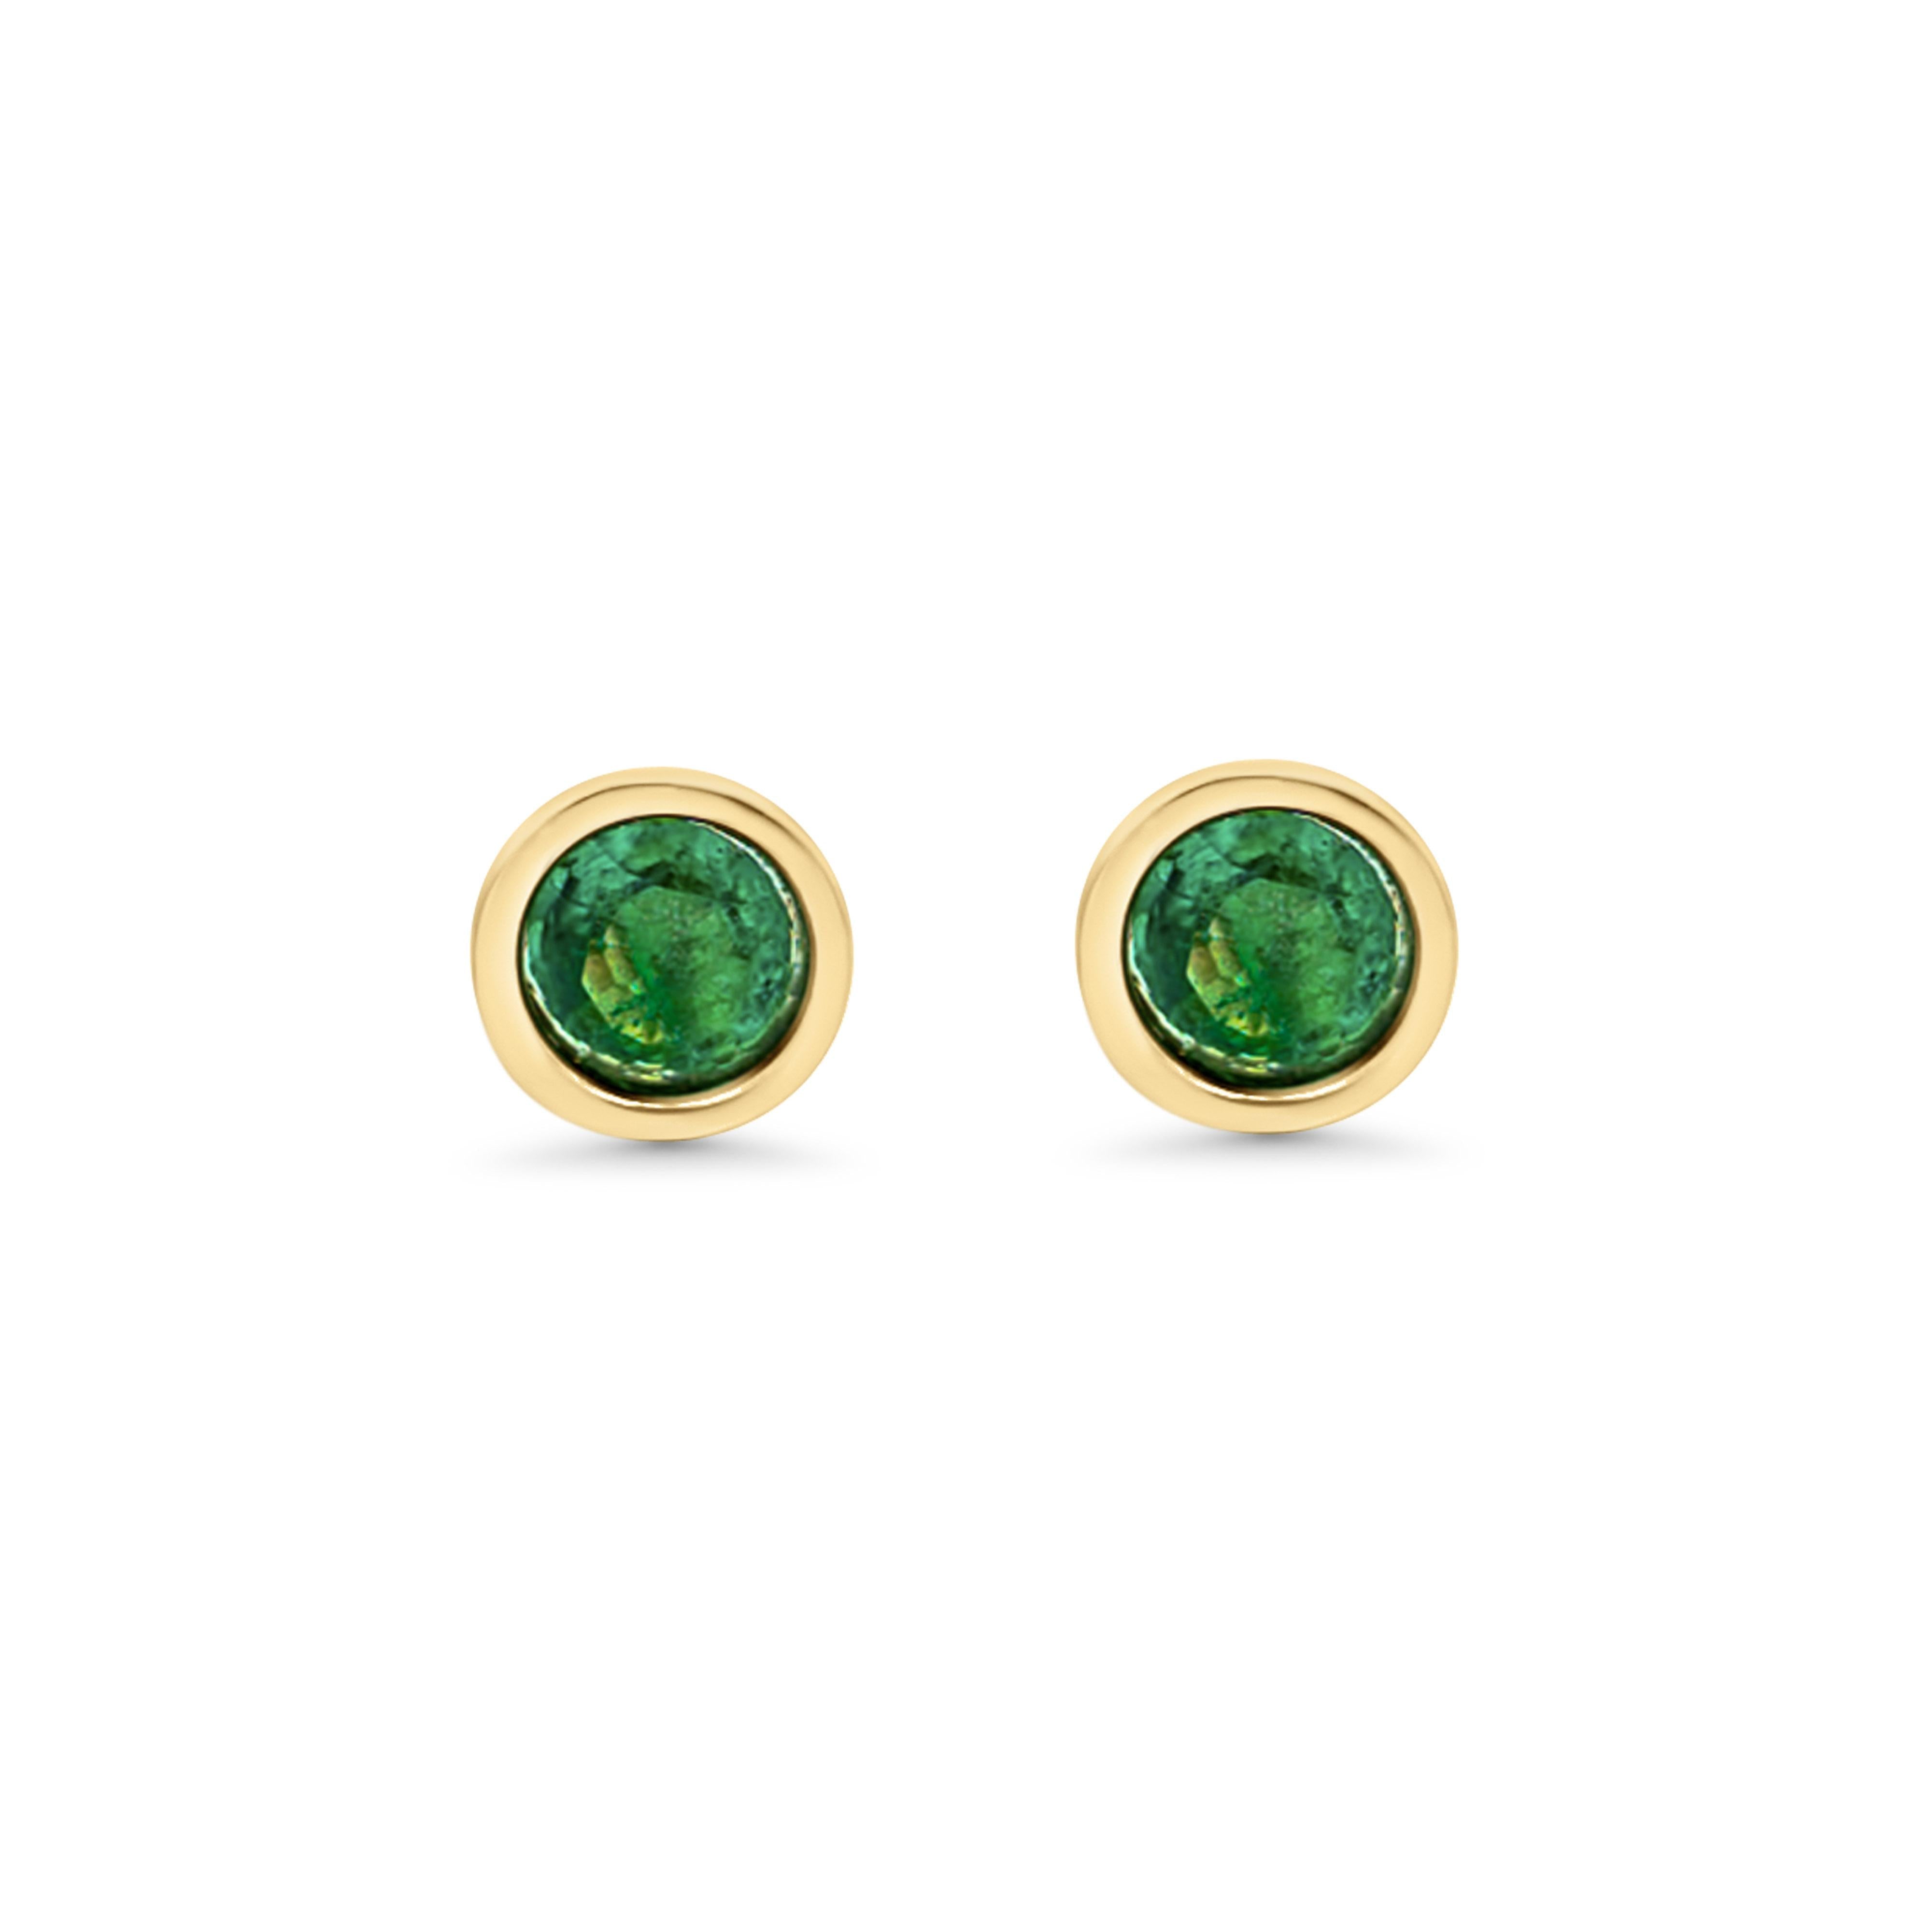 2 Carat Emerald Round Bezel Stud Earrings in 14K Yellow Gold